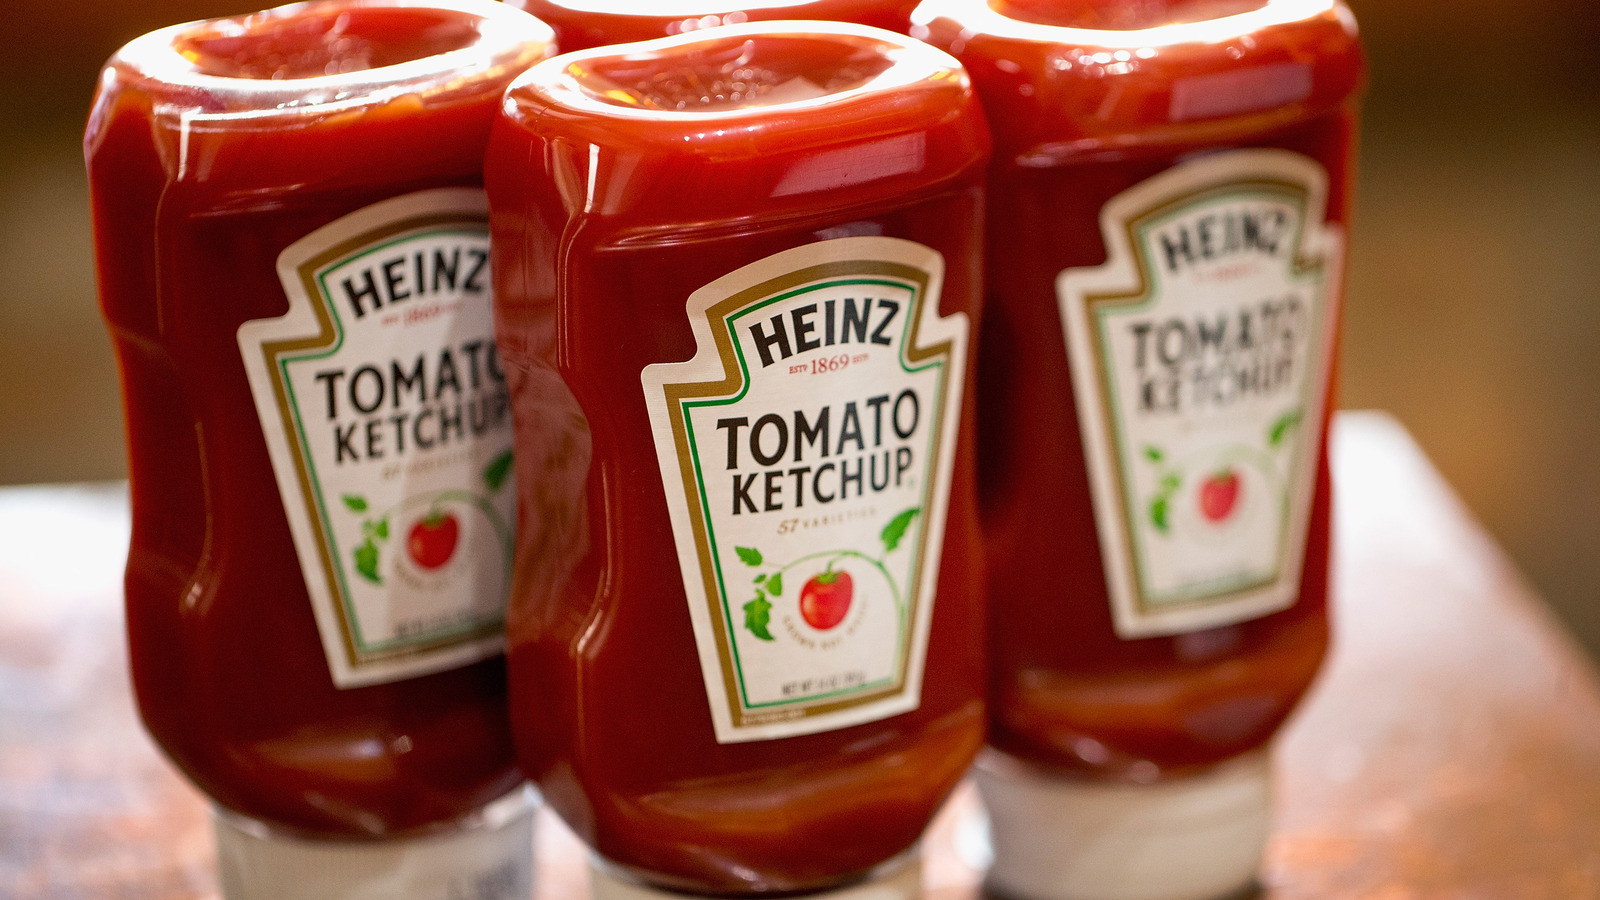 Heinz finalmente concluyó la discusión sobre cómo almacenar adecuadamente la salsa de tomate